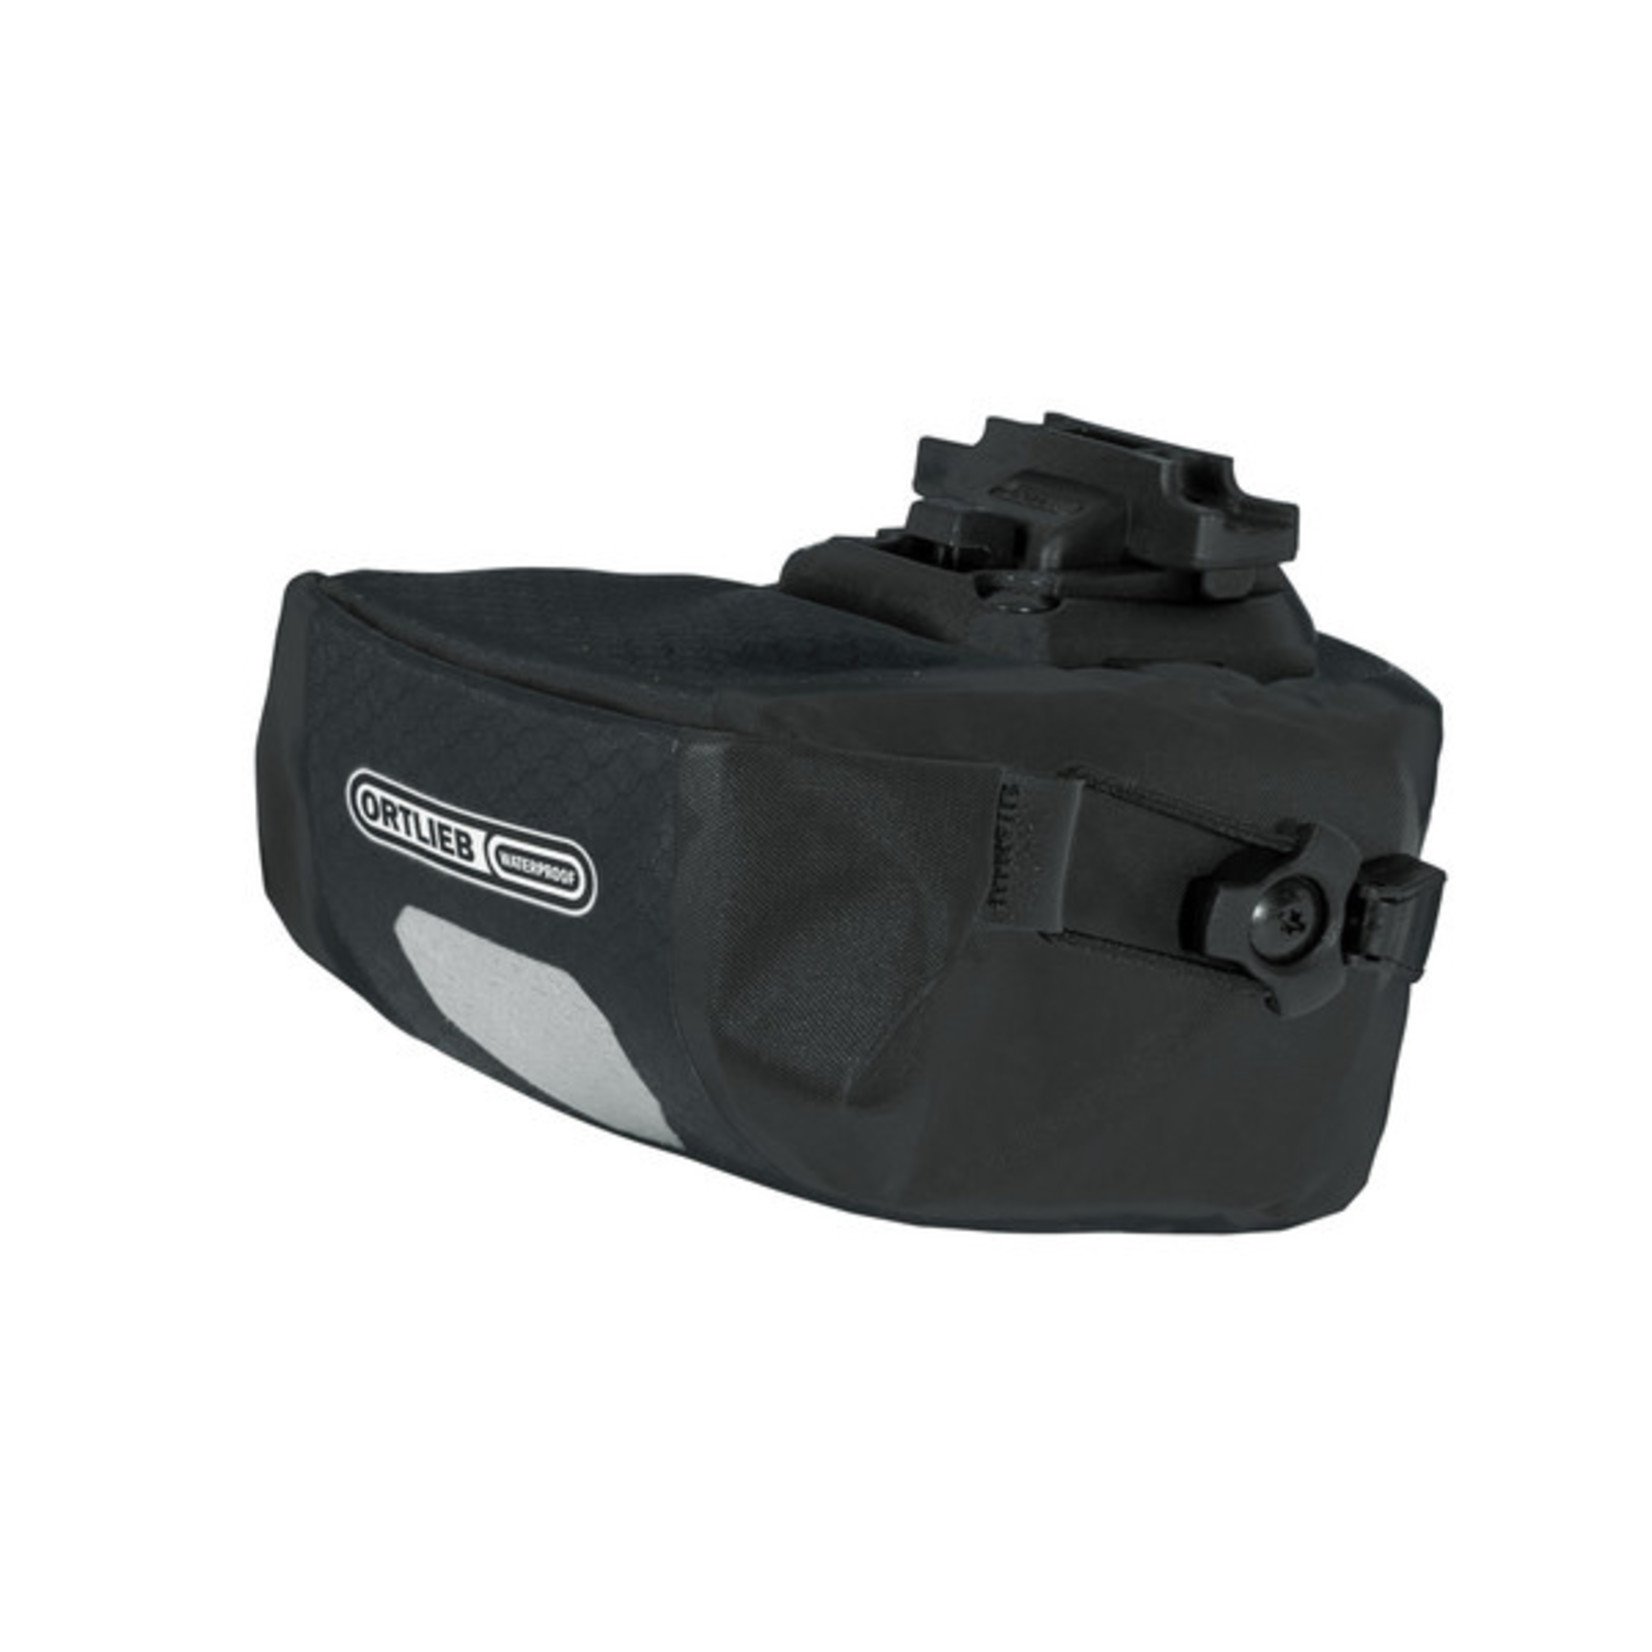 Ortlieb Ortlieb Saddle-Bag Micro - Two Black Matt F9674